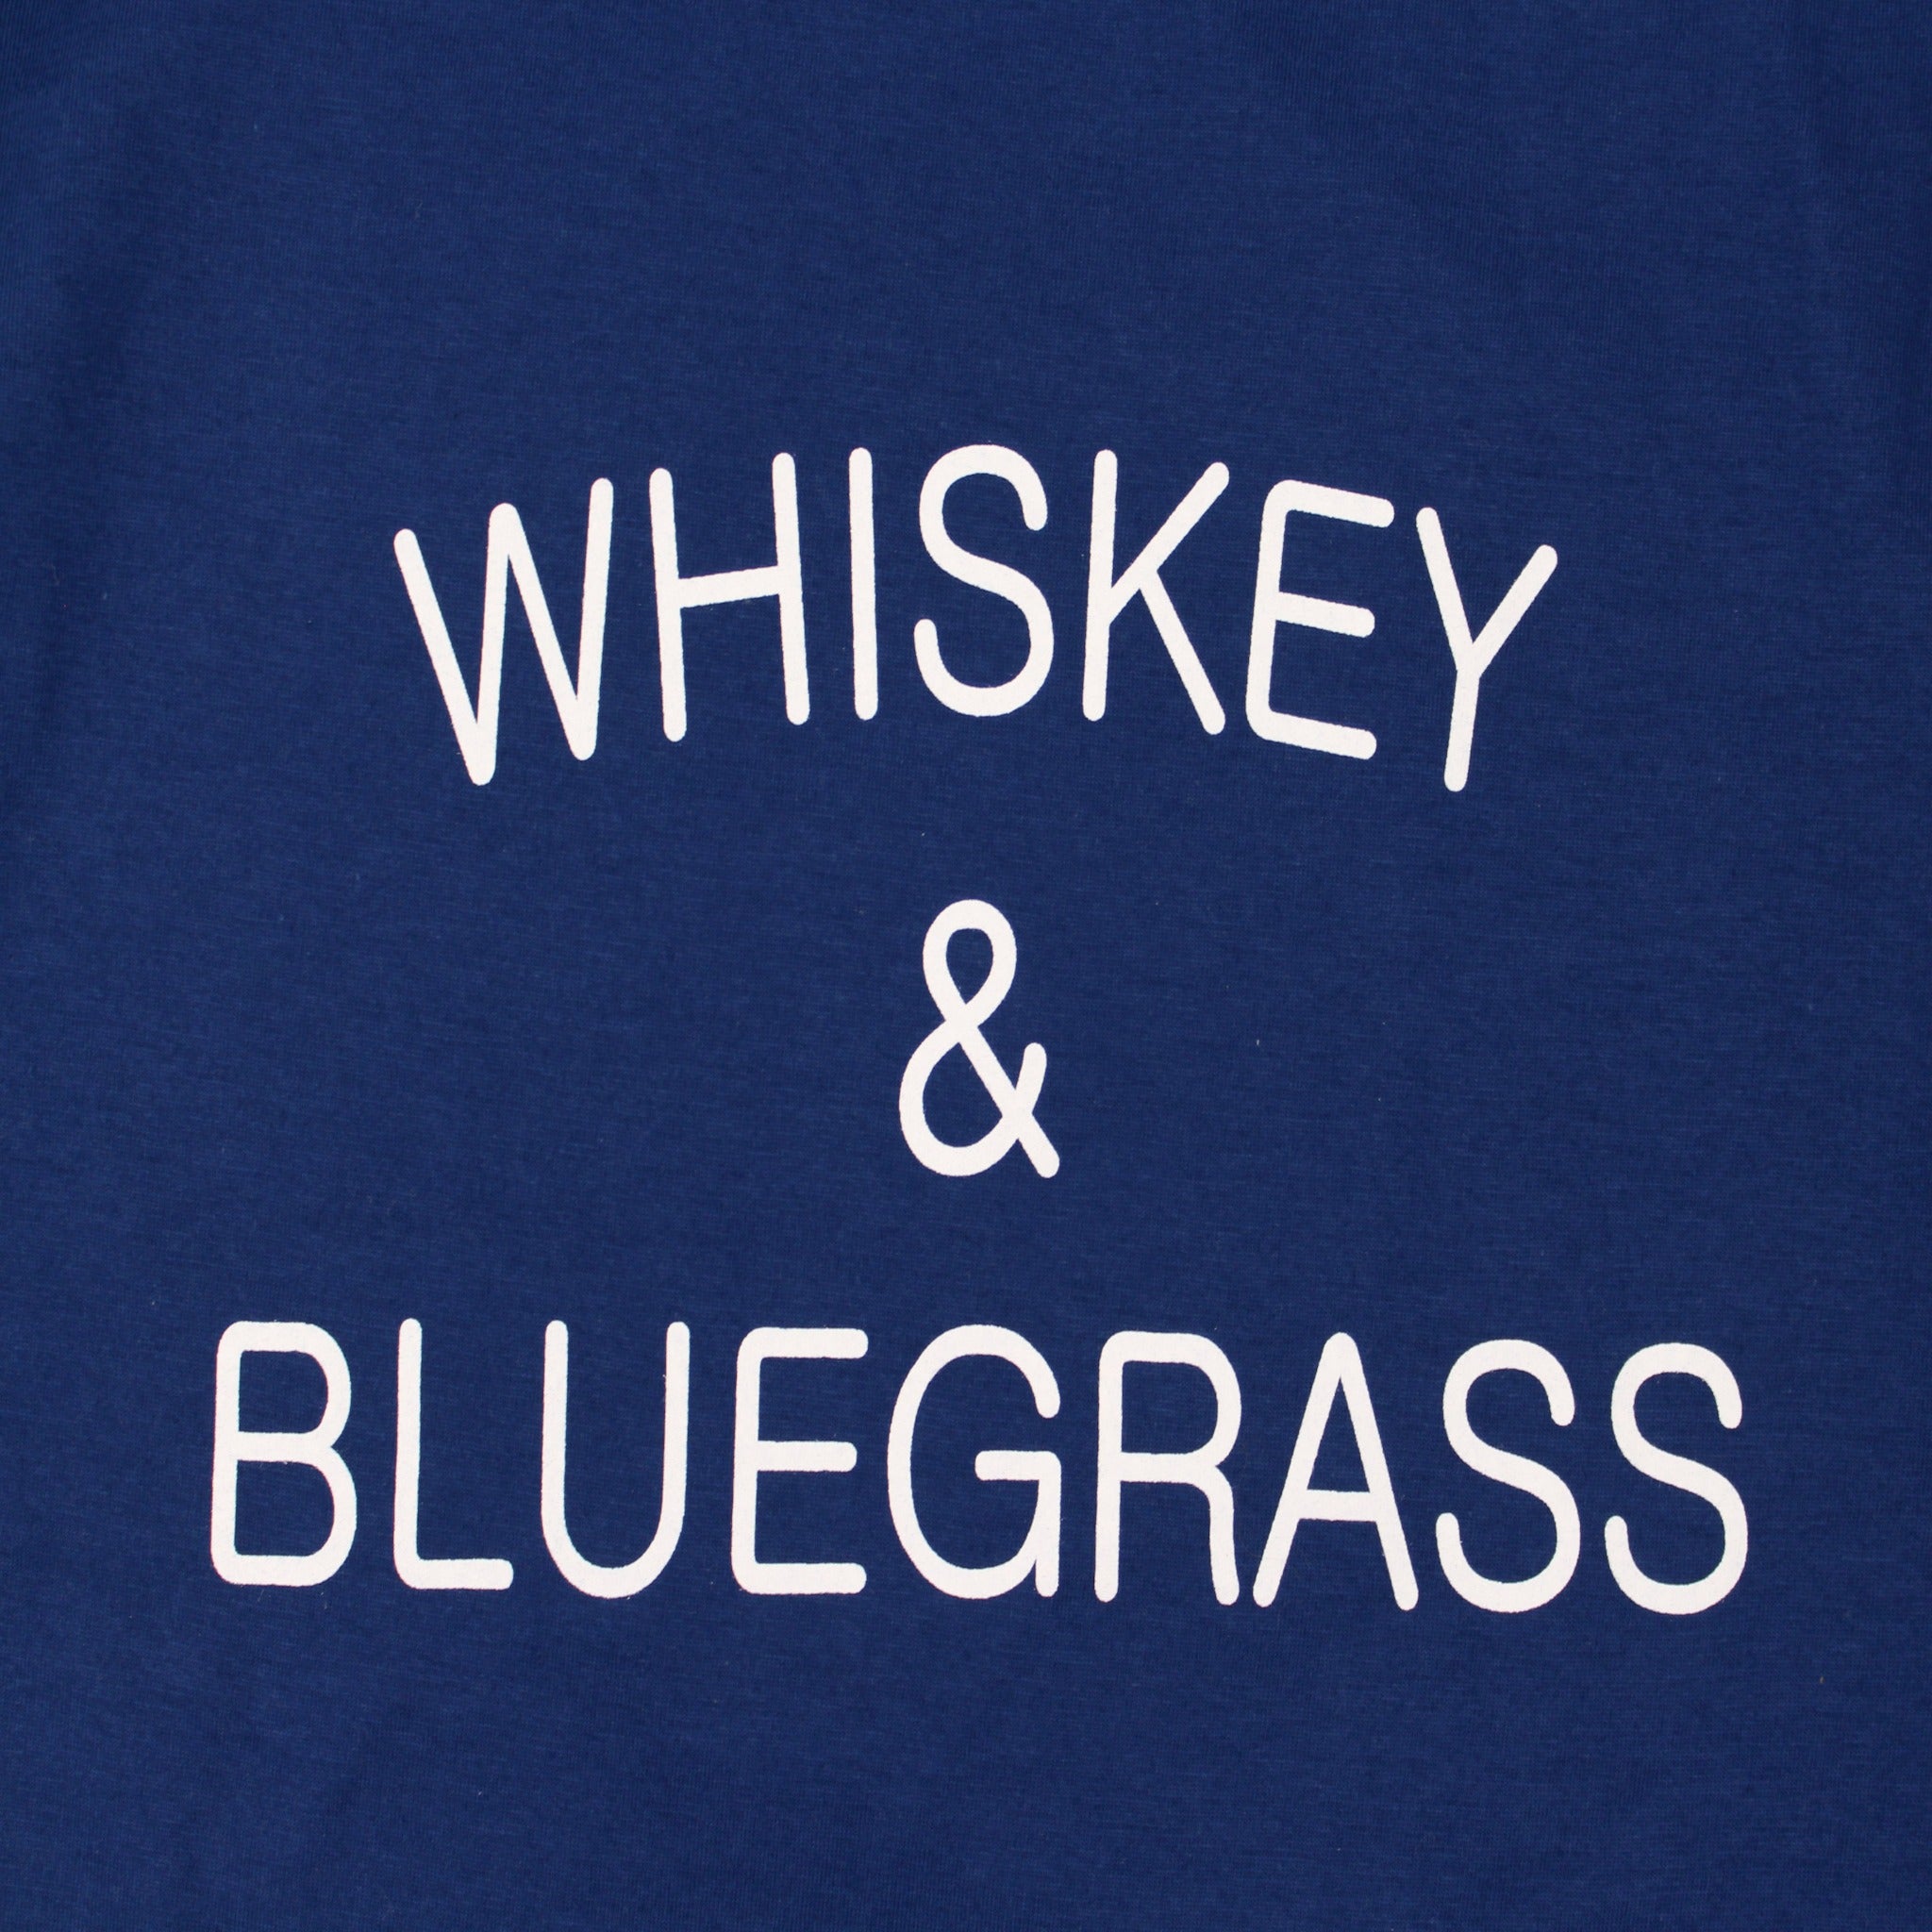 Whiskeygrass Tee